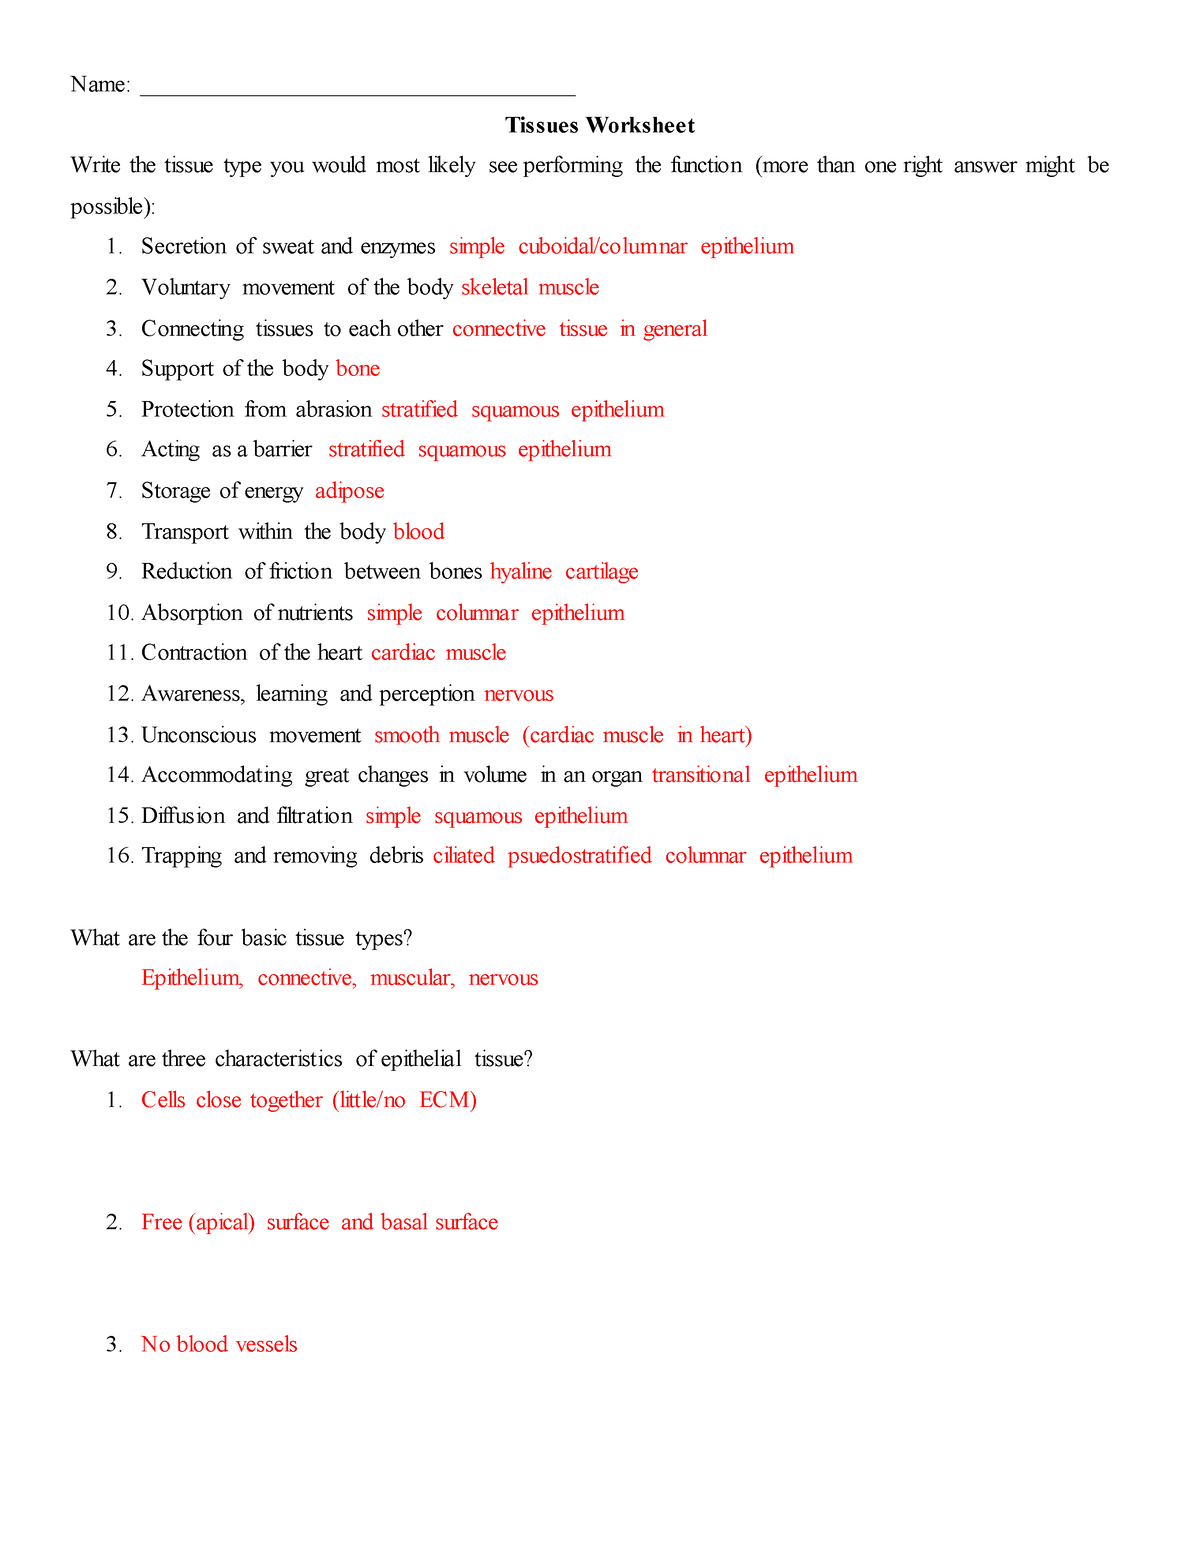 tissue-worksheet-161-key-name-tissues-worksheet-write